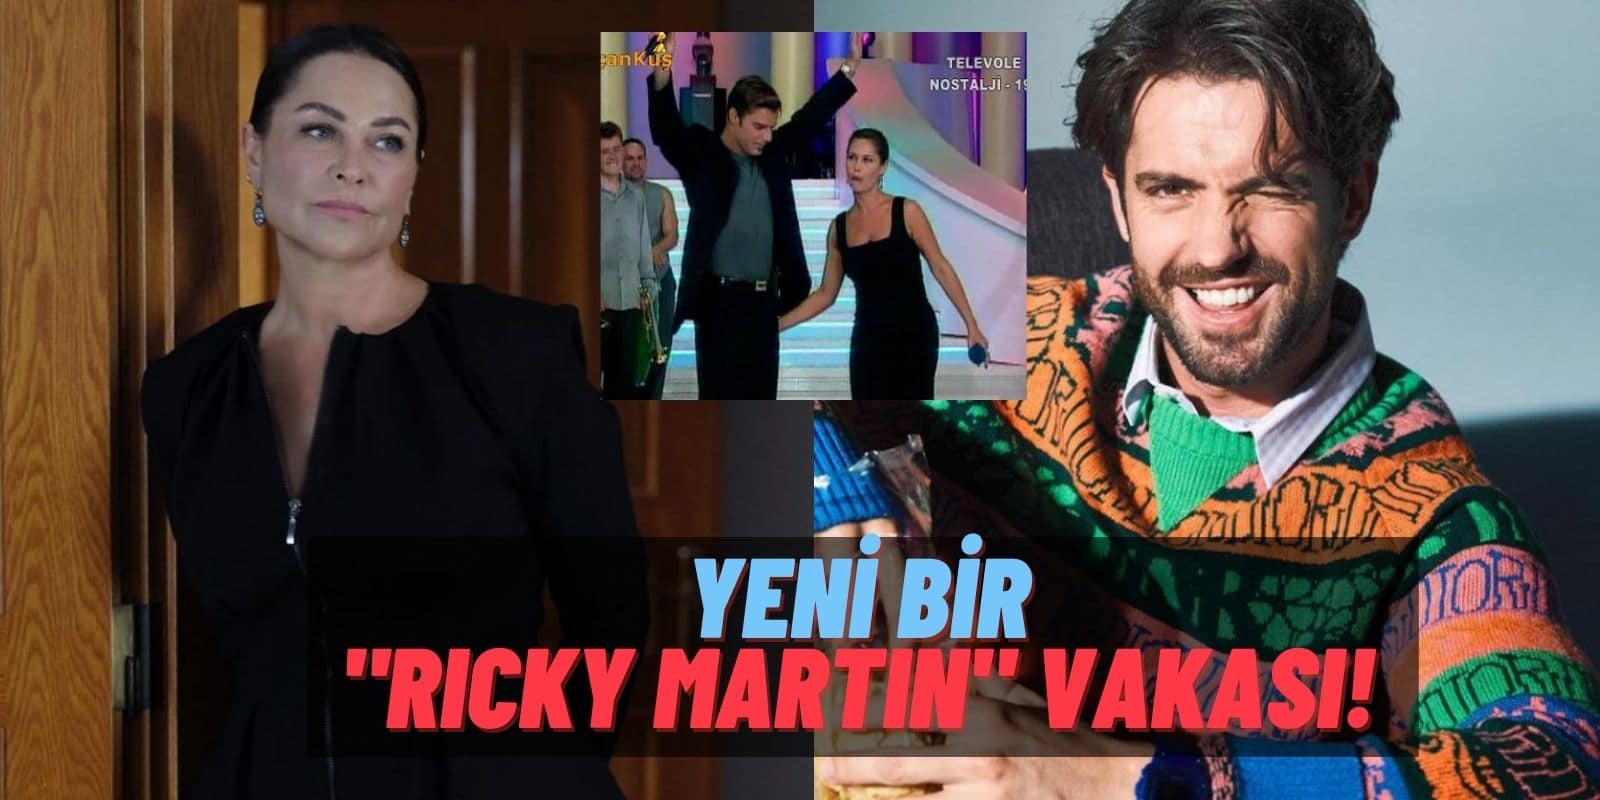 Masumiyet’te “Popo” Krizi! Hülya Avşar Serkay Tütüncü’nün Poposuna Vurdu: “Ricky Martin İşine Bak Kardeşim!”